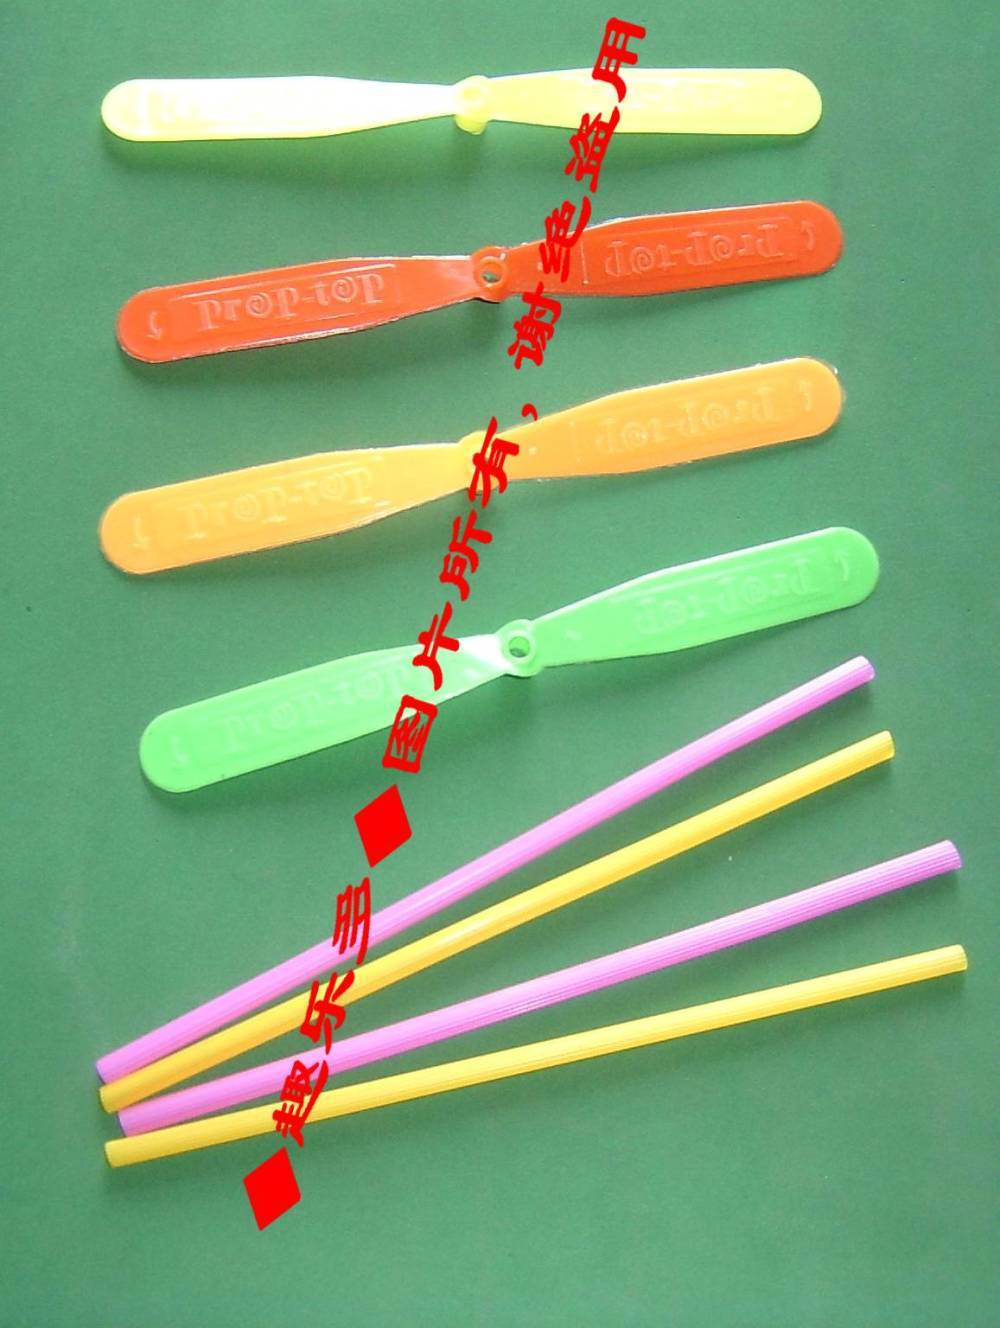 ◆趣乐多◆经典玩具 塑料竹蜻蜓 一元钱两个